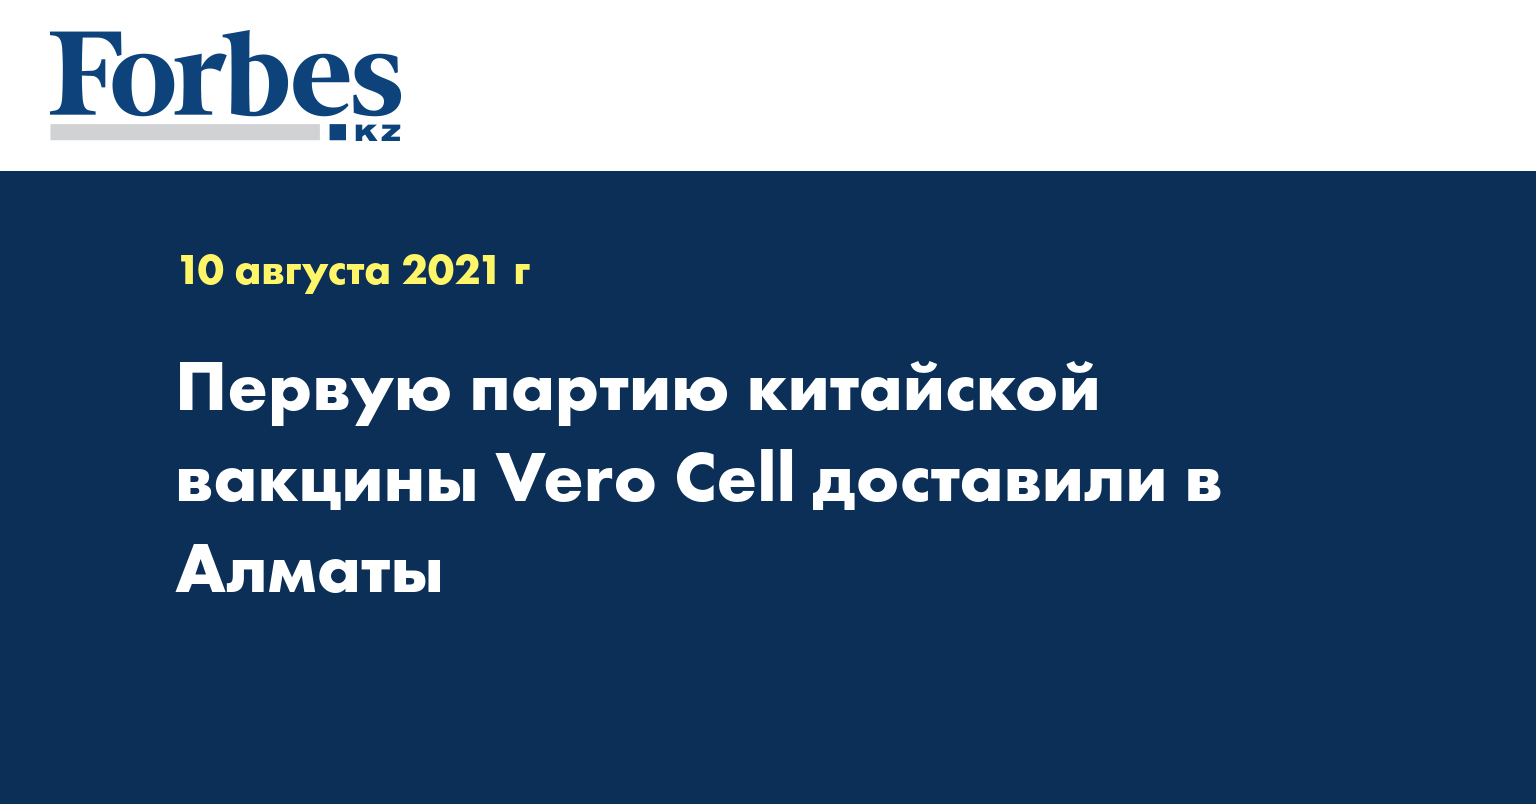 Первую партию китайской вакцины Vero Cell доставили в Алматы